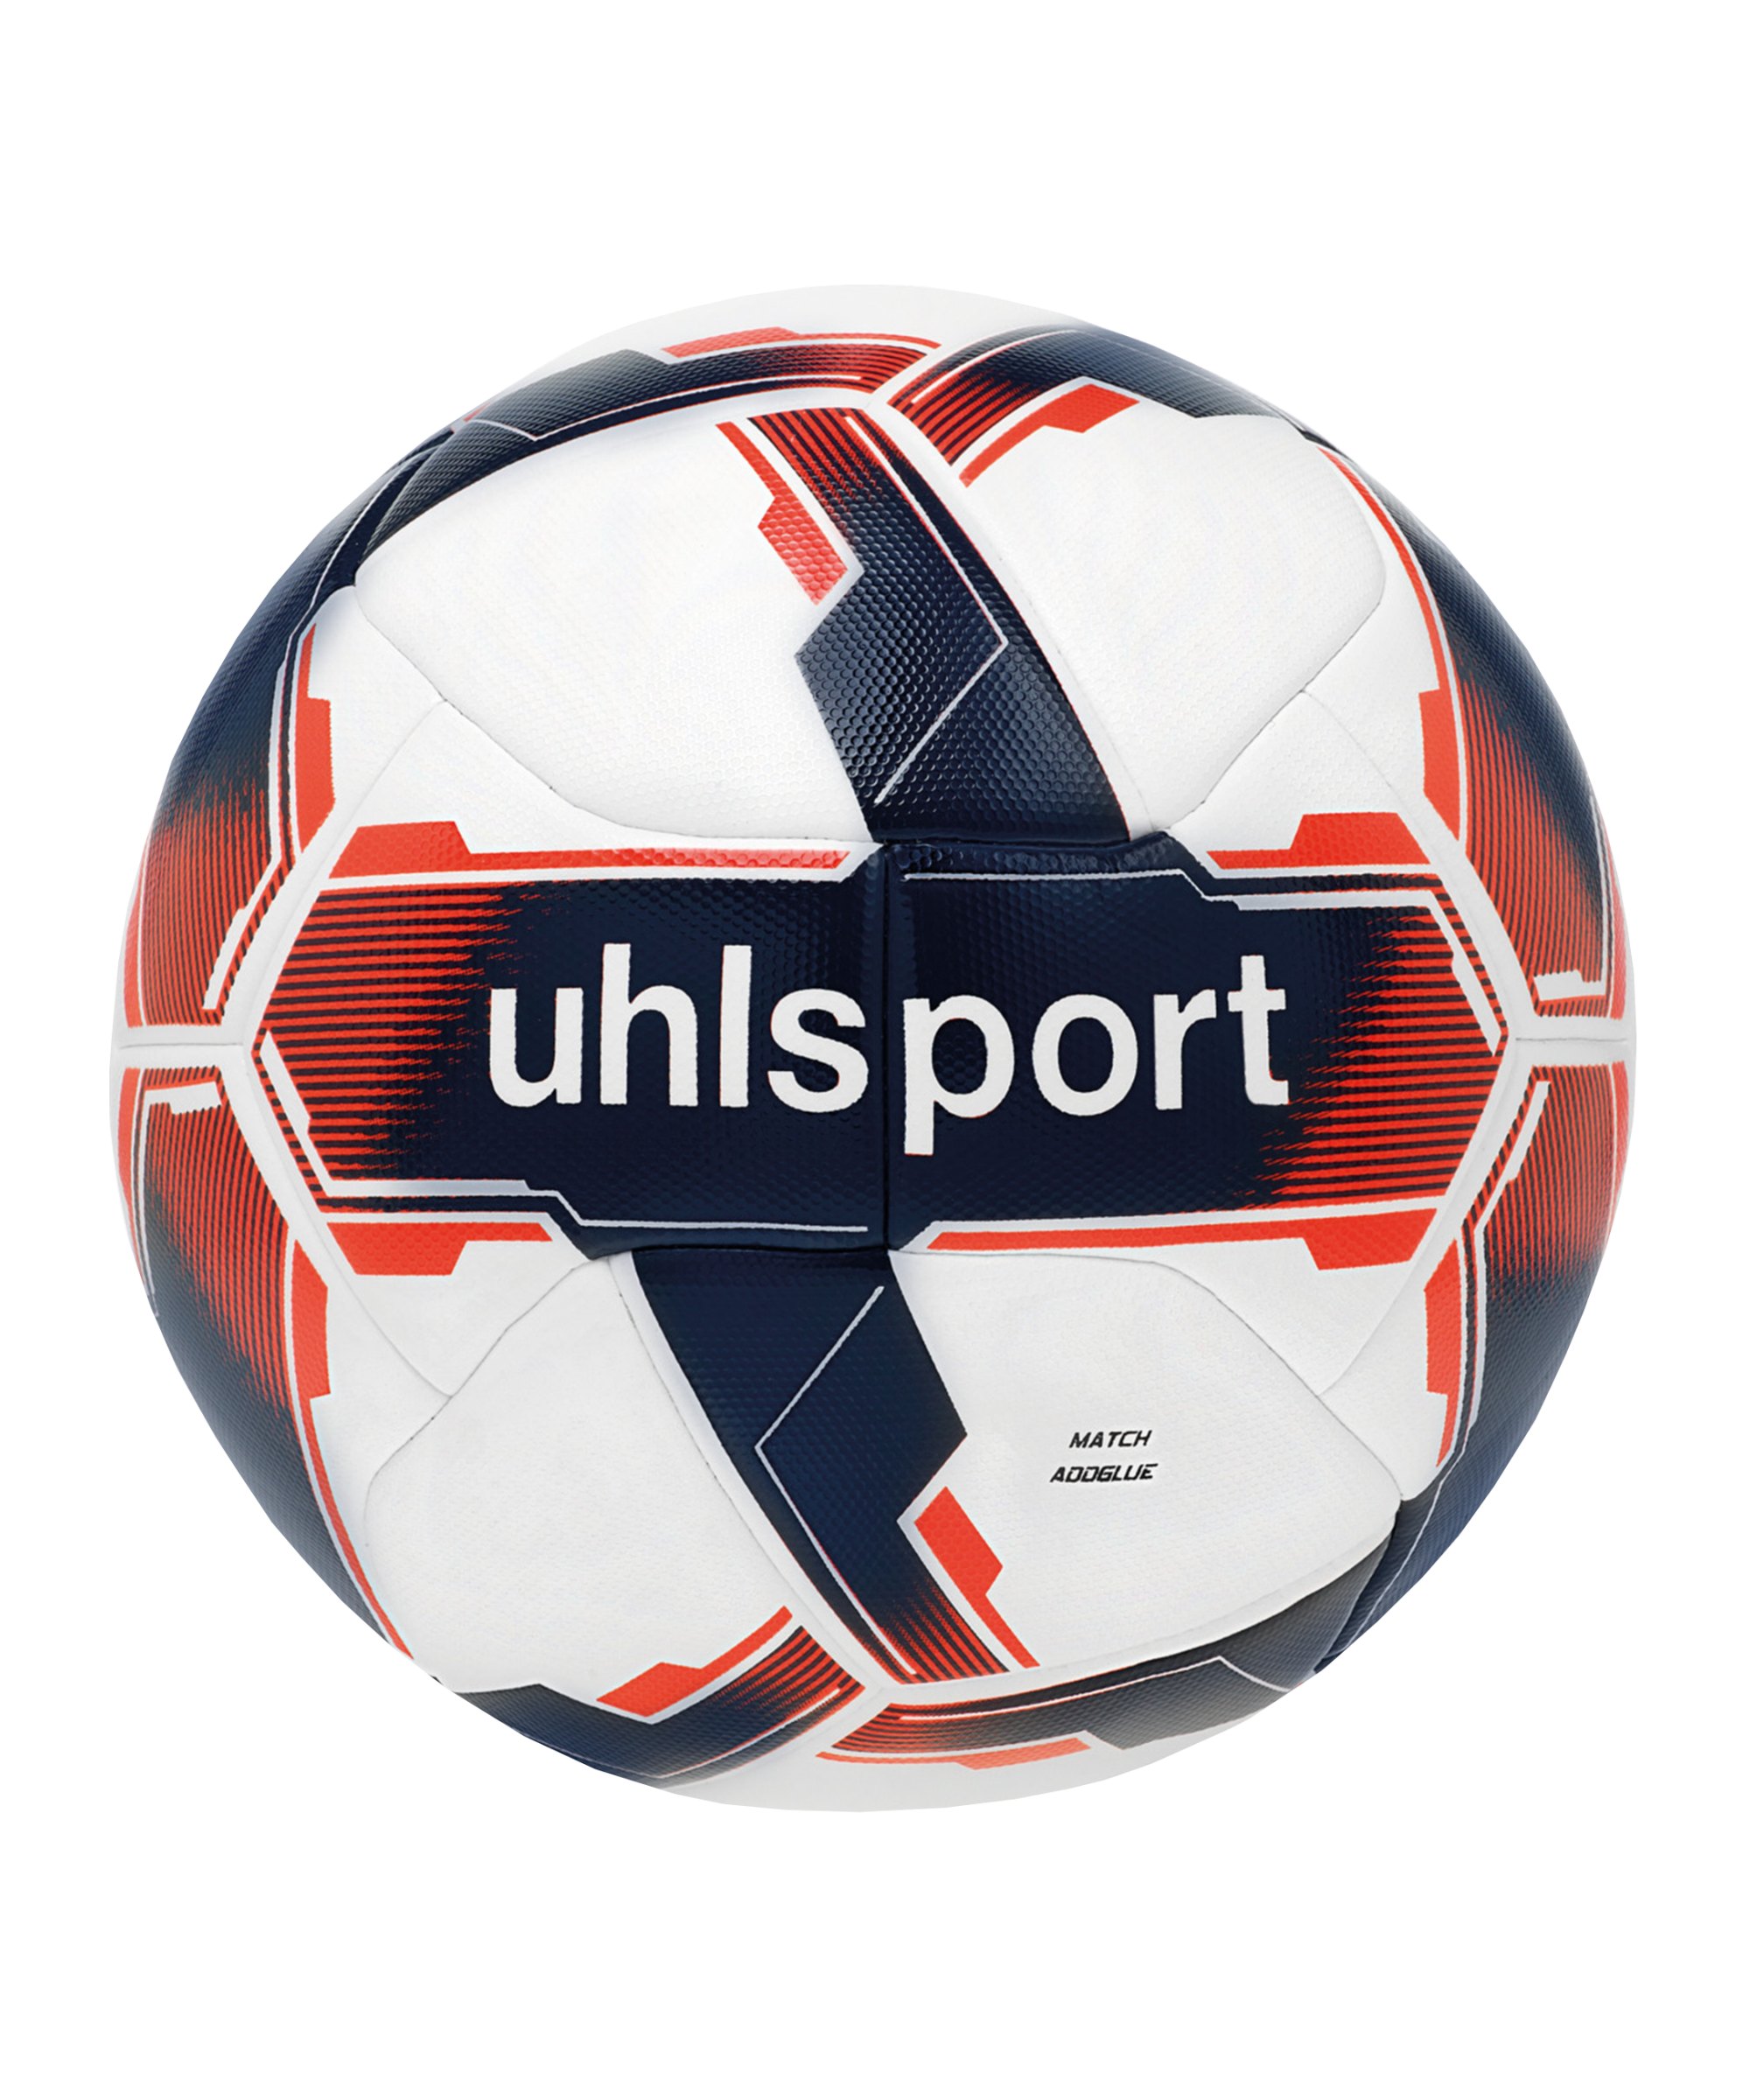 Uhlsport Match Addglue Spielball Weiss Rot F01 - weiss